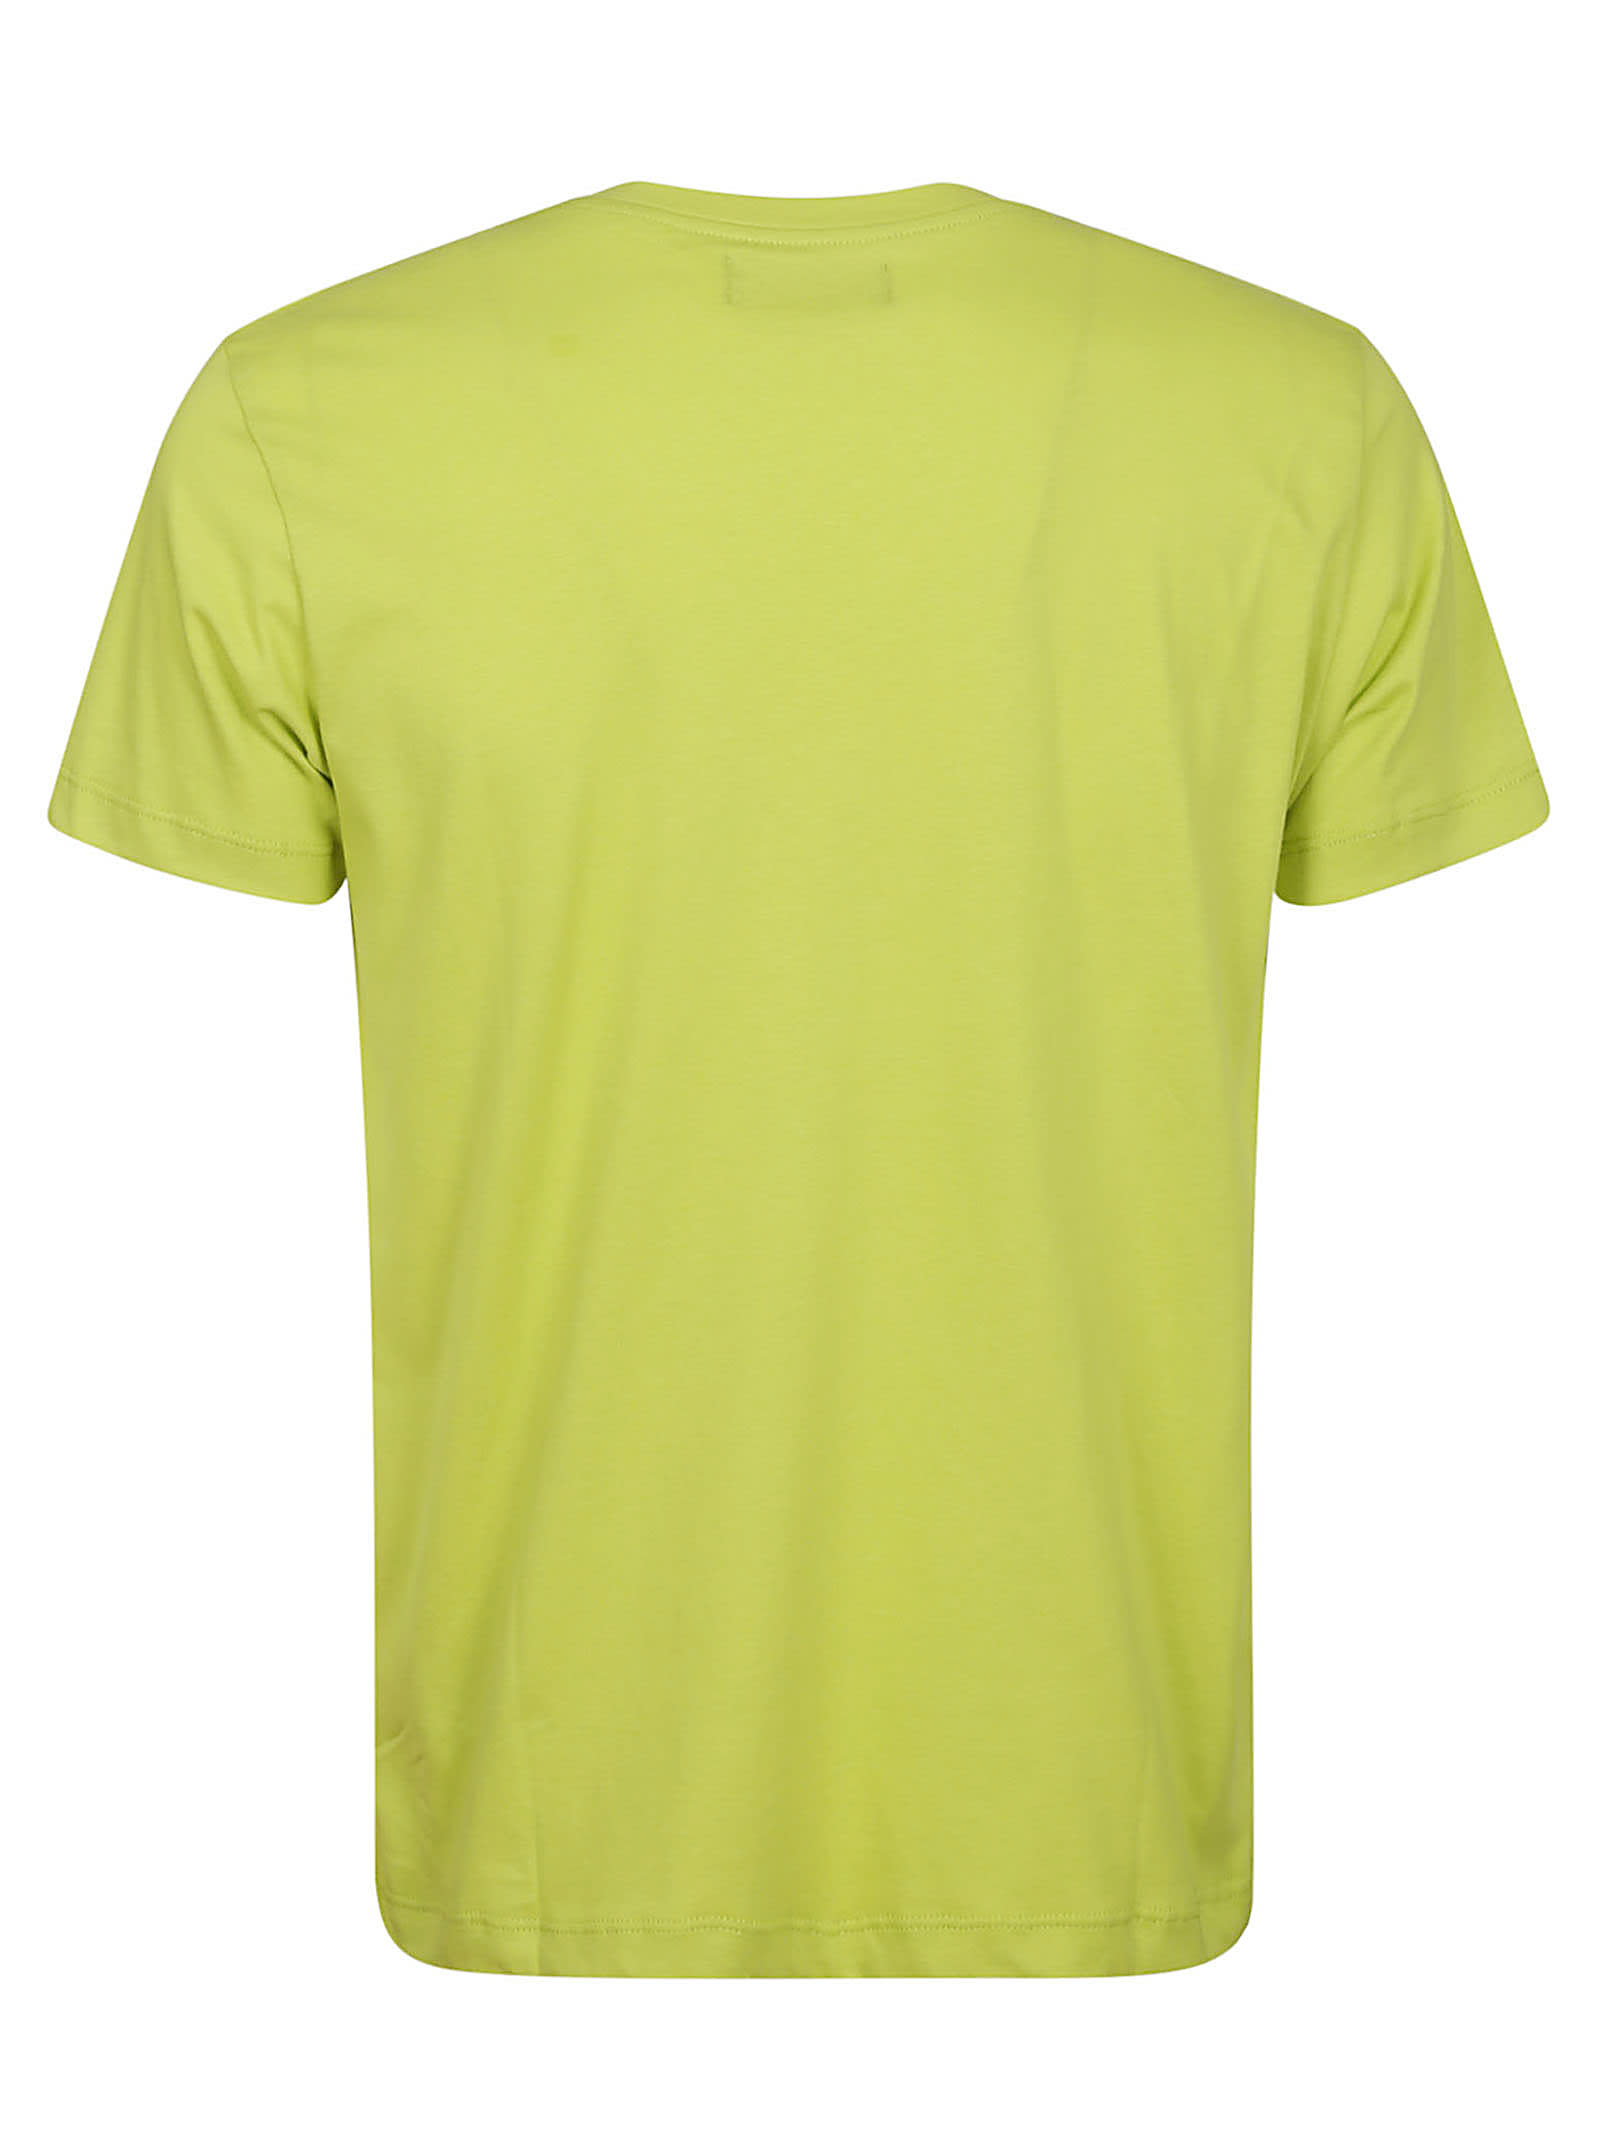 Shop Vilebrequin T-shirt In Acid Green